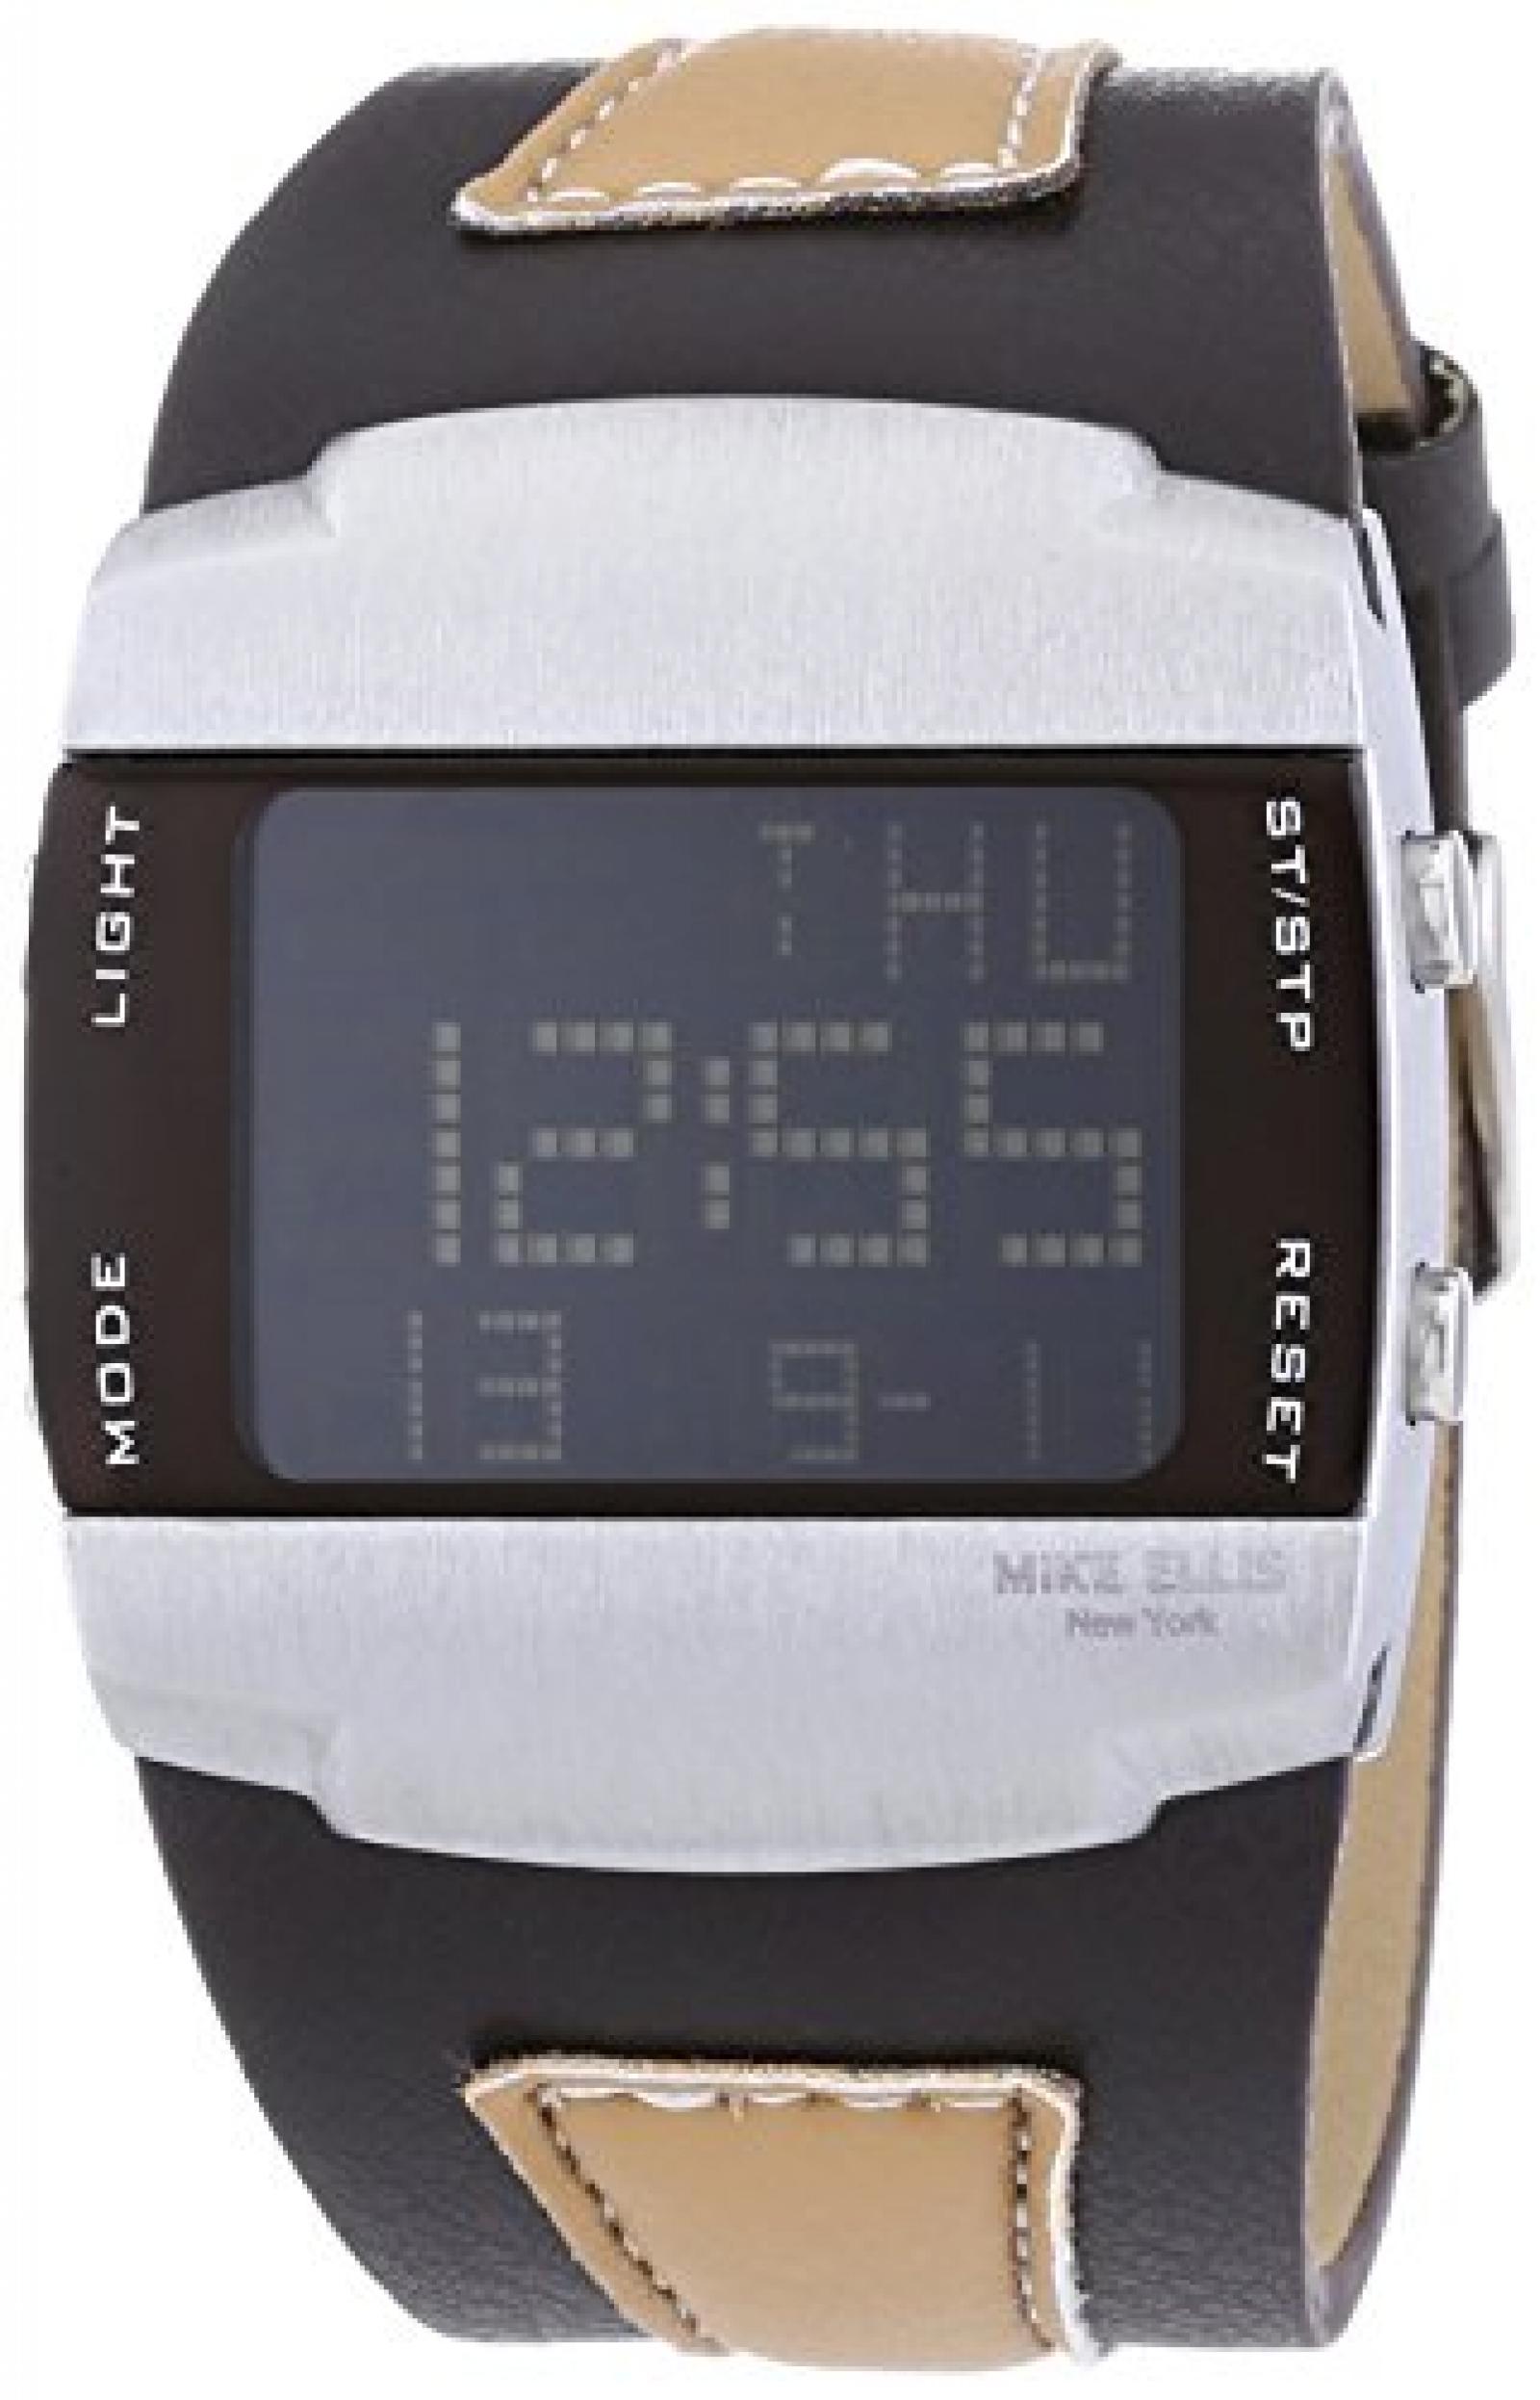 Mike Ellis New York Herren-Armbanduhr LCD Digital Quarz Kunstleder SL4217/3 